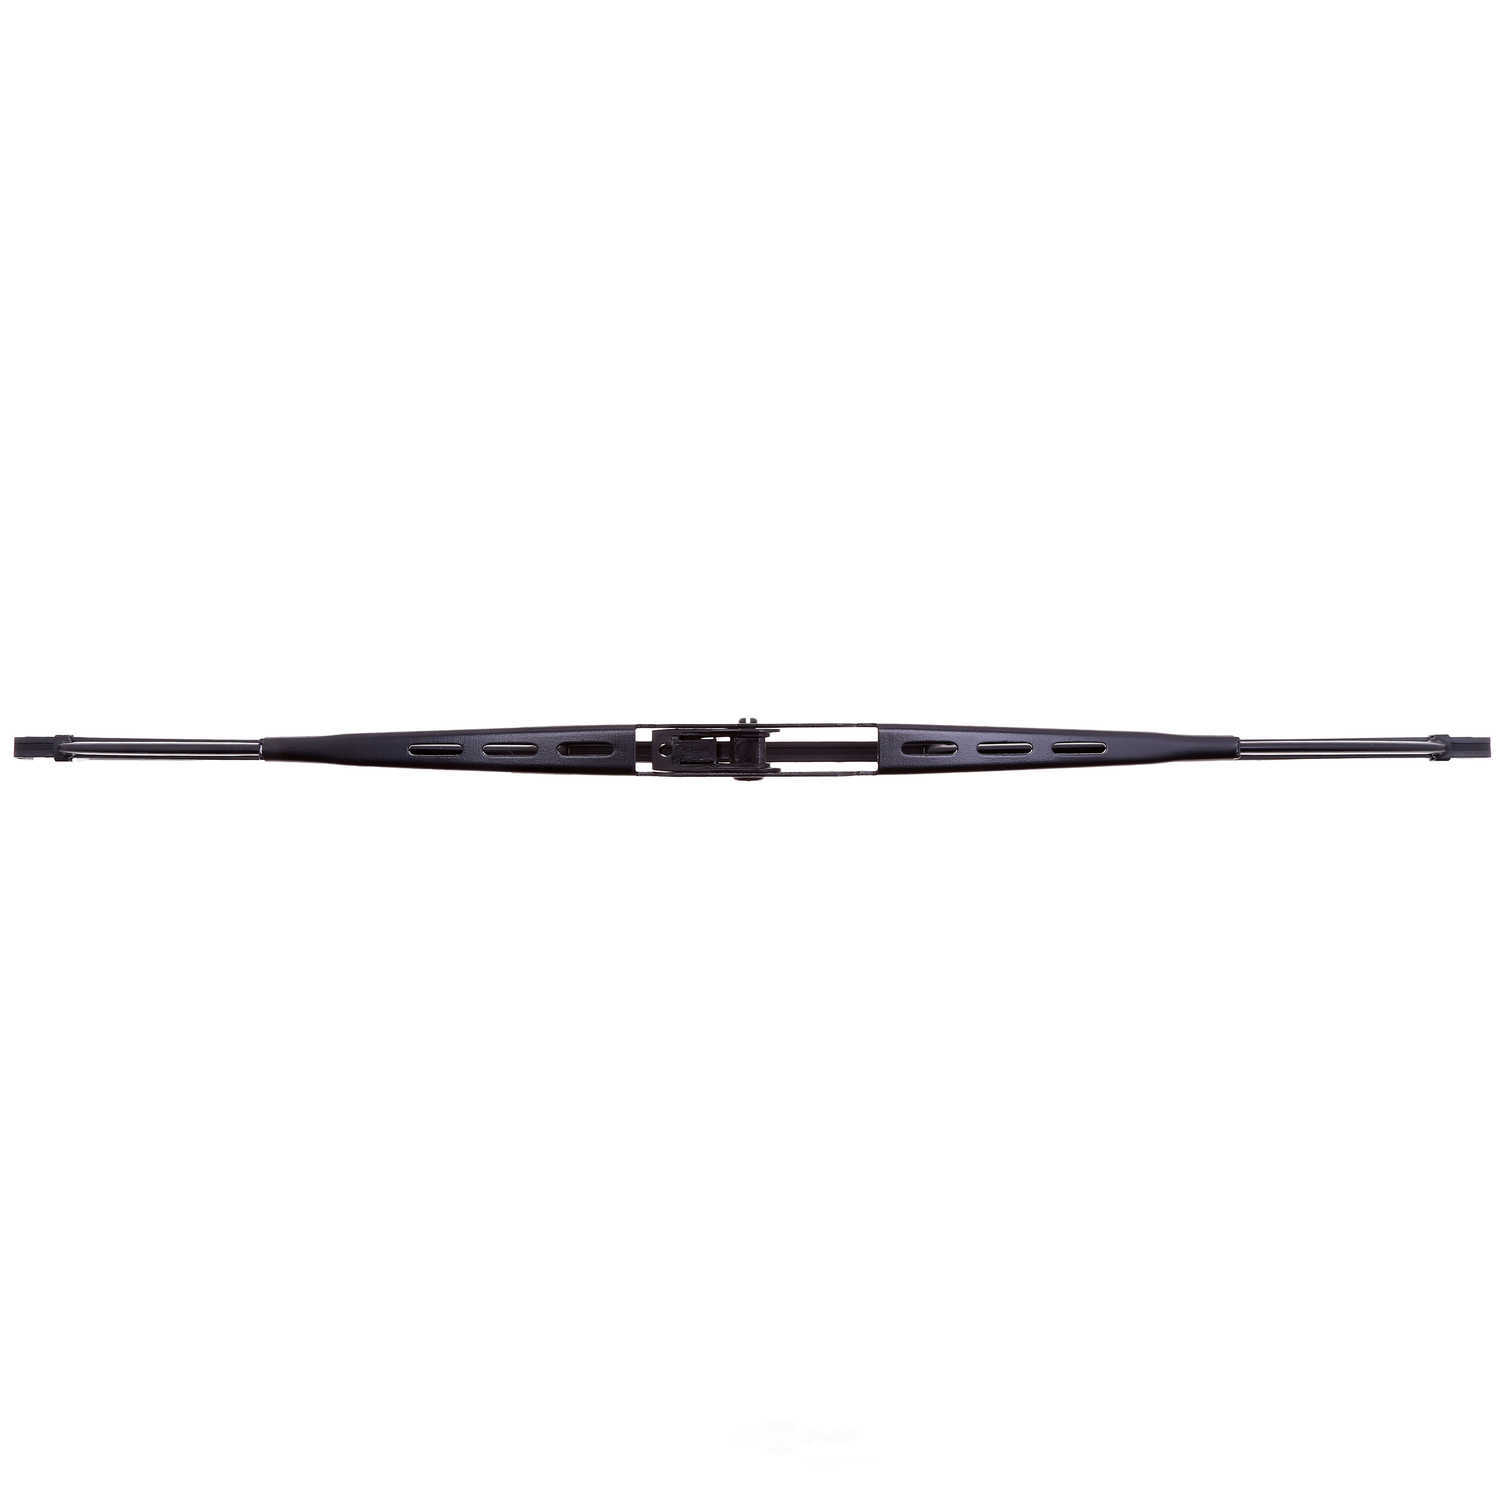 ANCO WIPER PRODUCTS - ANCO 31-Series Wiper Blade - ANC 31-16